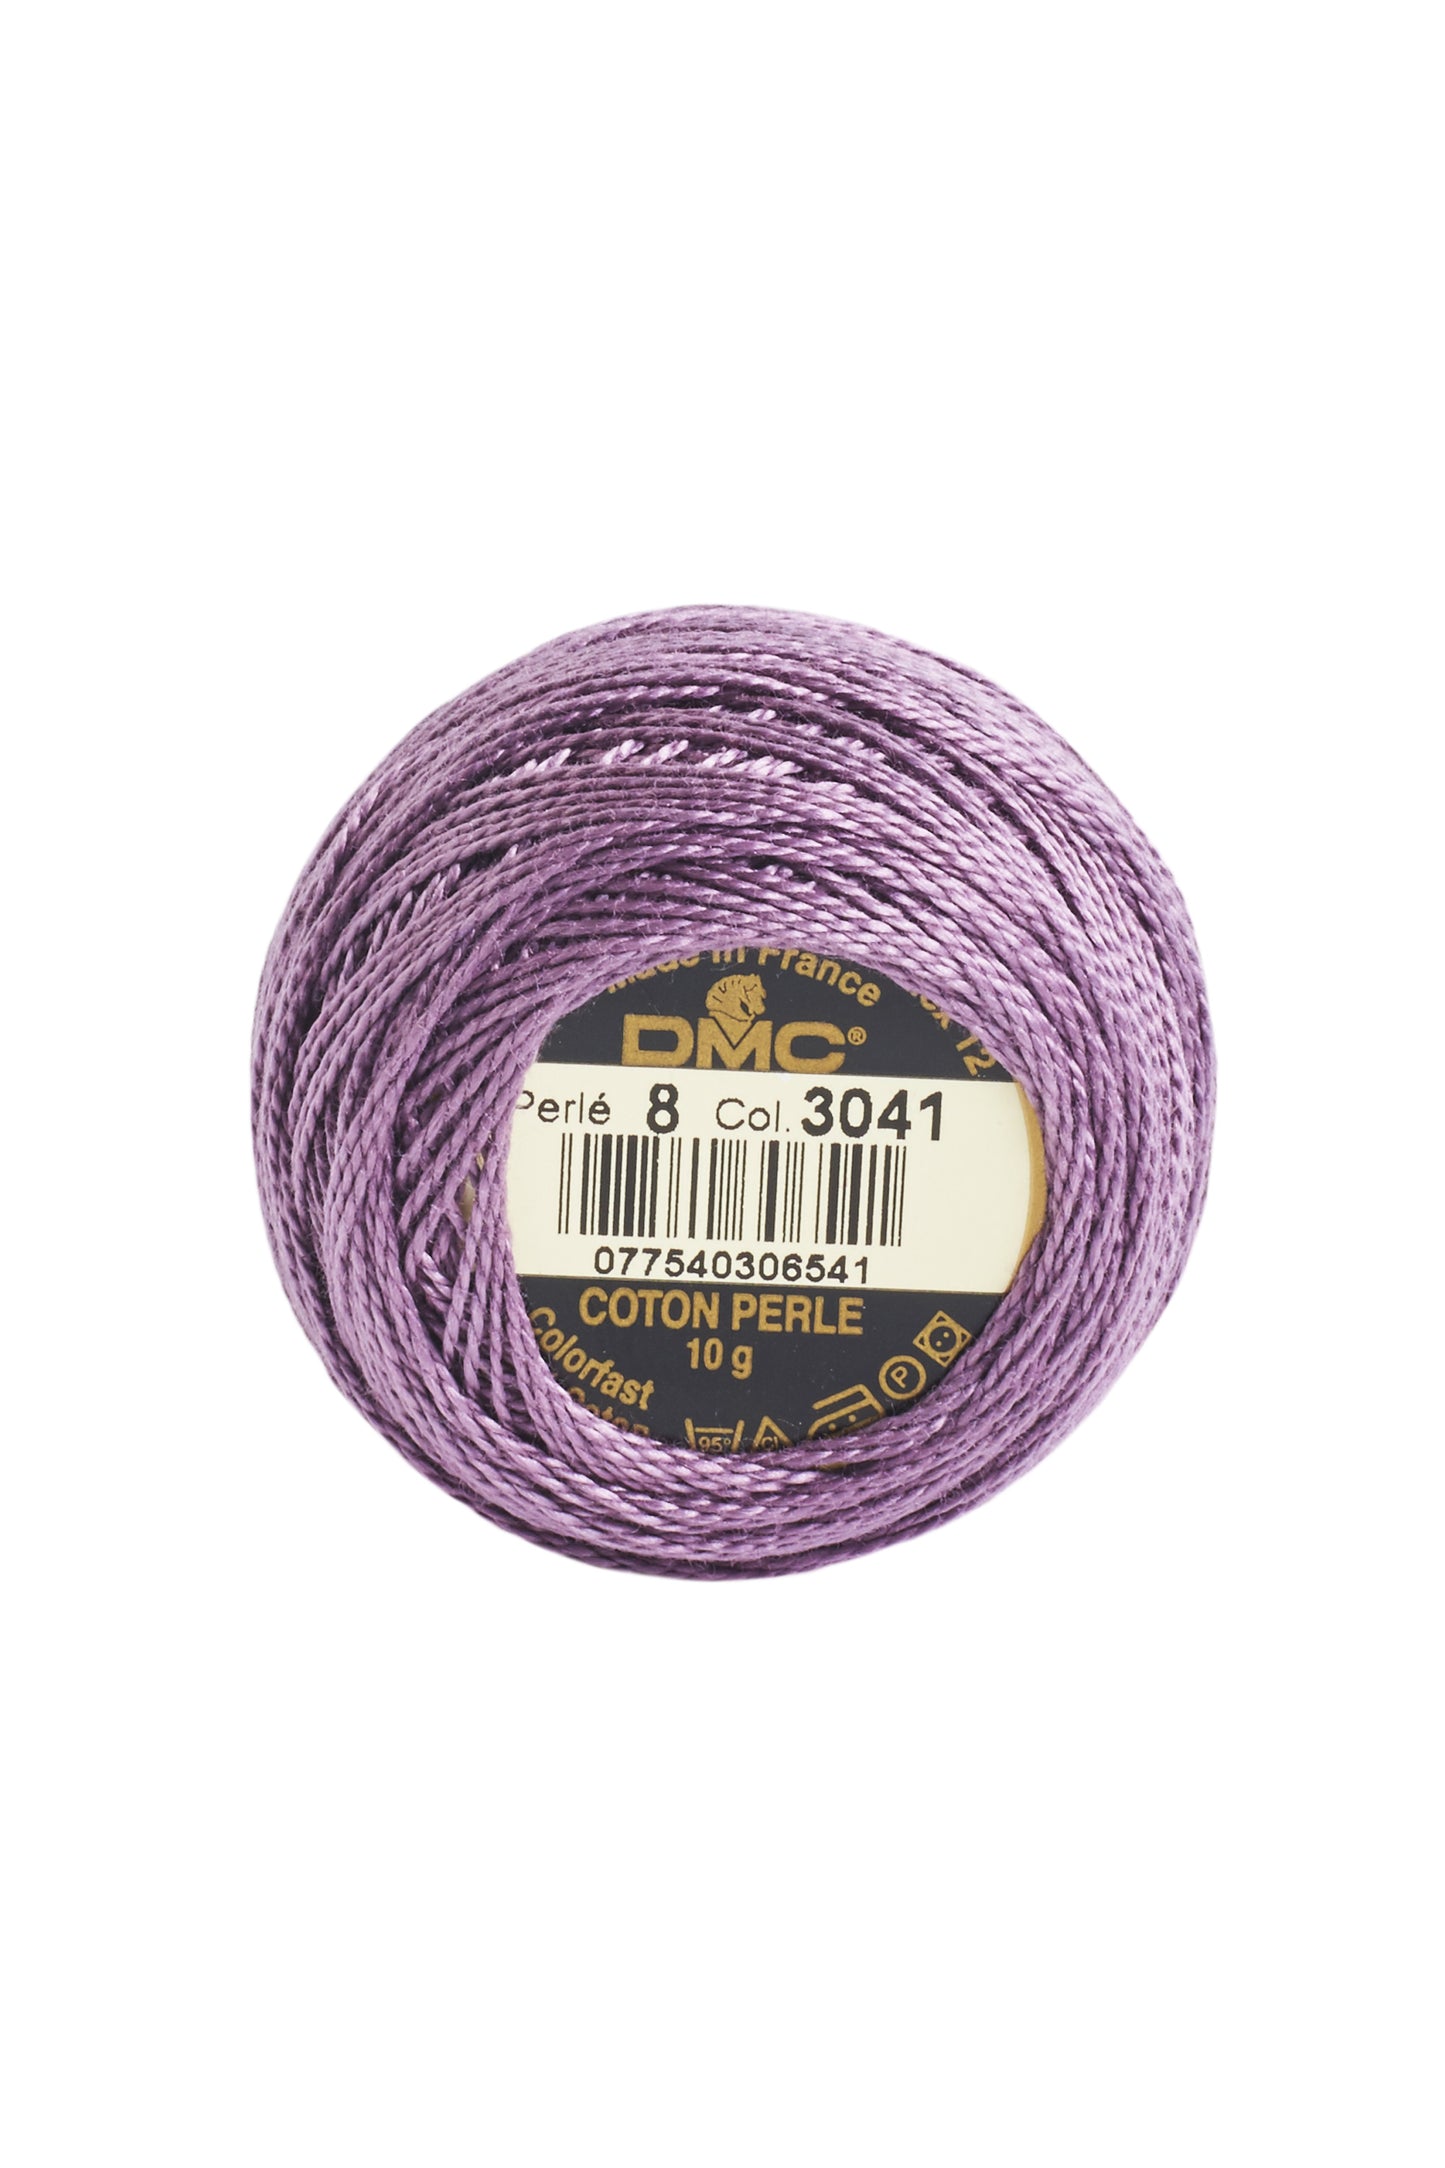 3041 Medium Antique Violet - DMC #8 Perle Cotton Ball